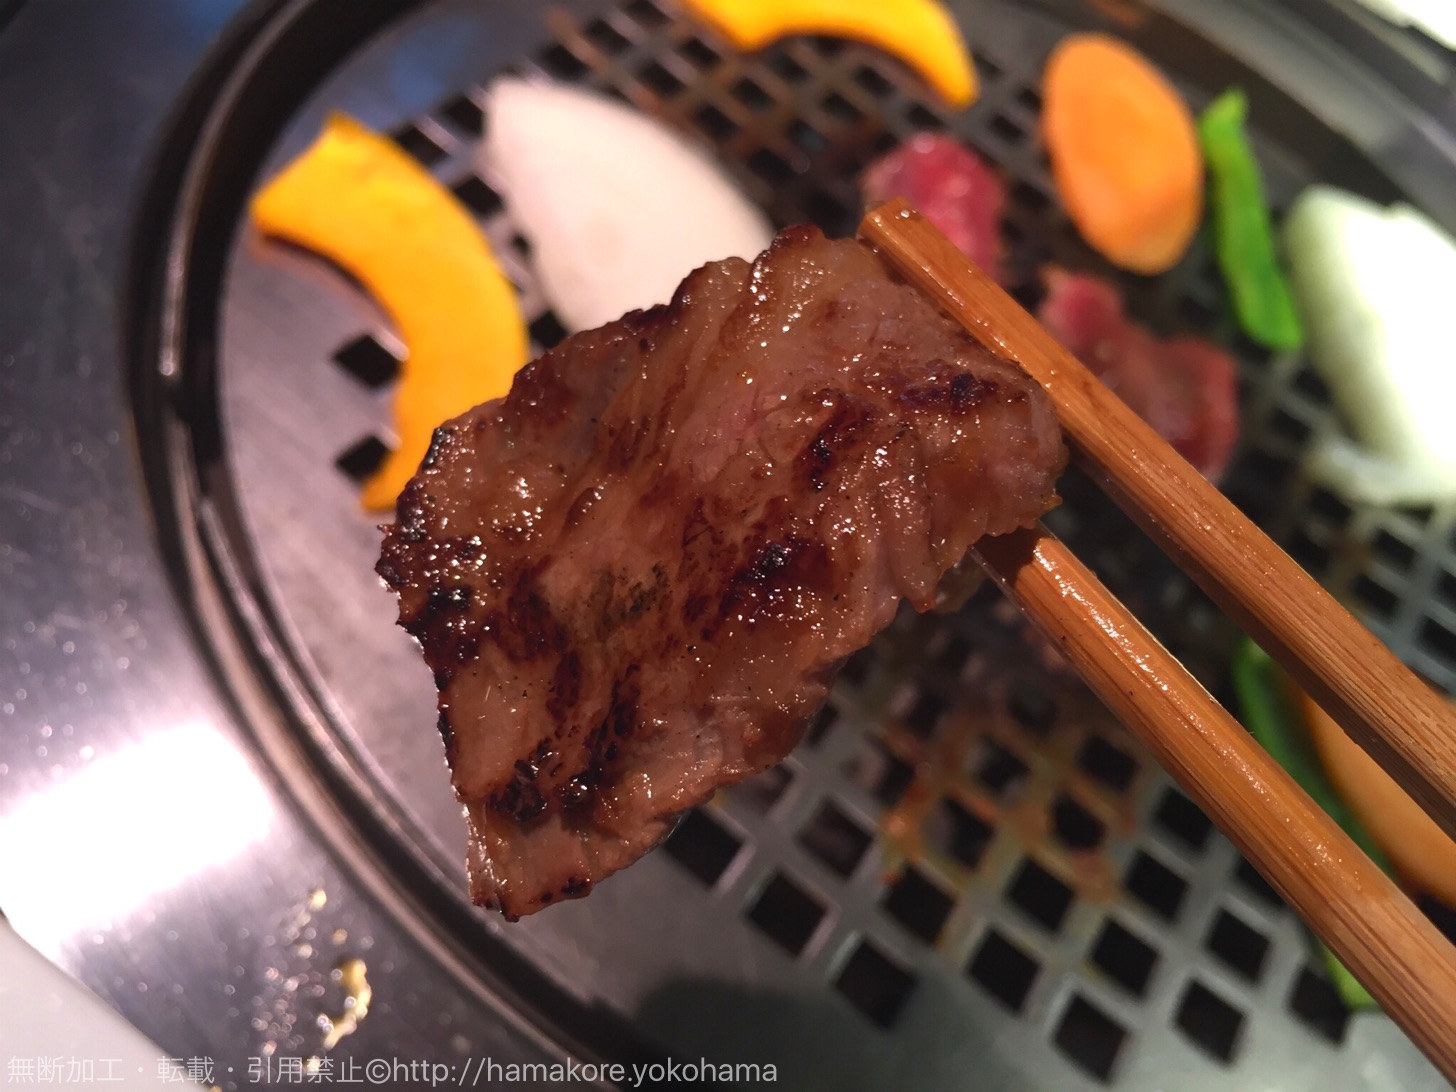 新横浜 腰塚 国産黒毛和牛の肉屋の焼肉ランチが最高 美味しくて再訪 はまこれ横浜